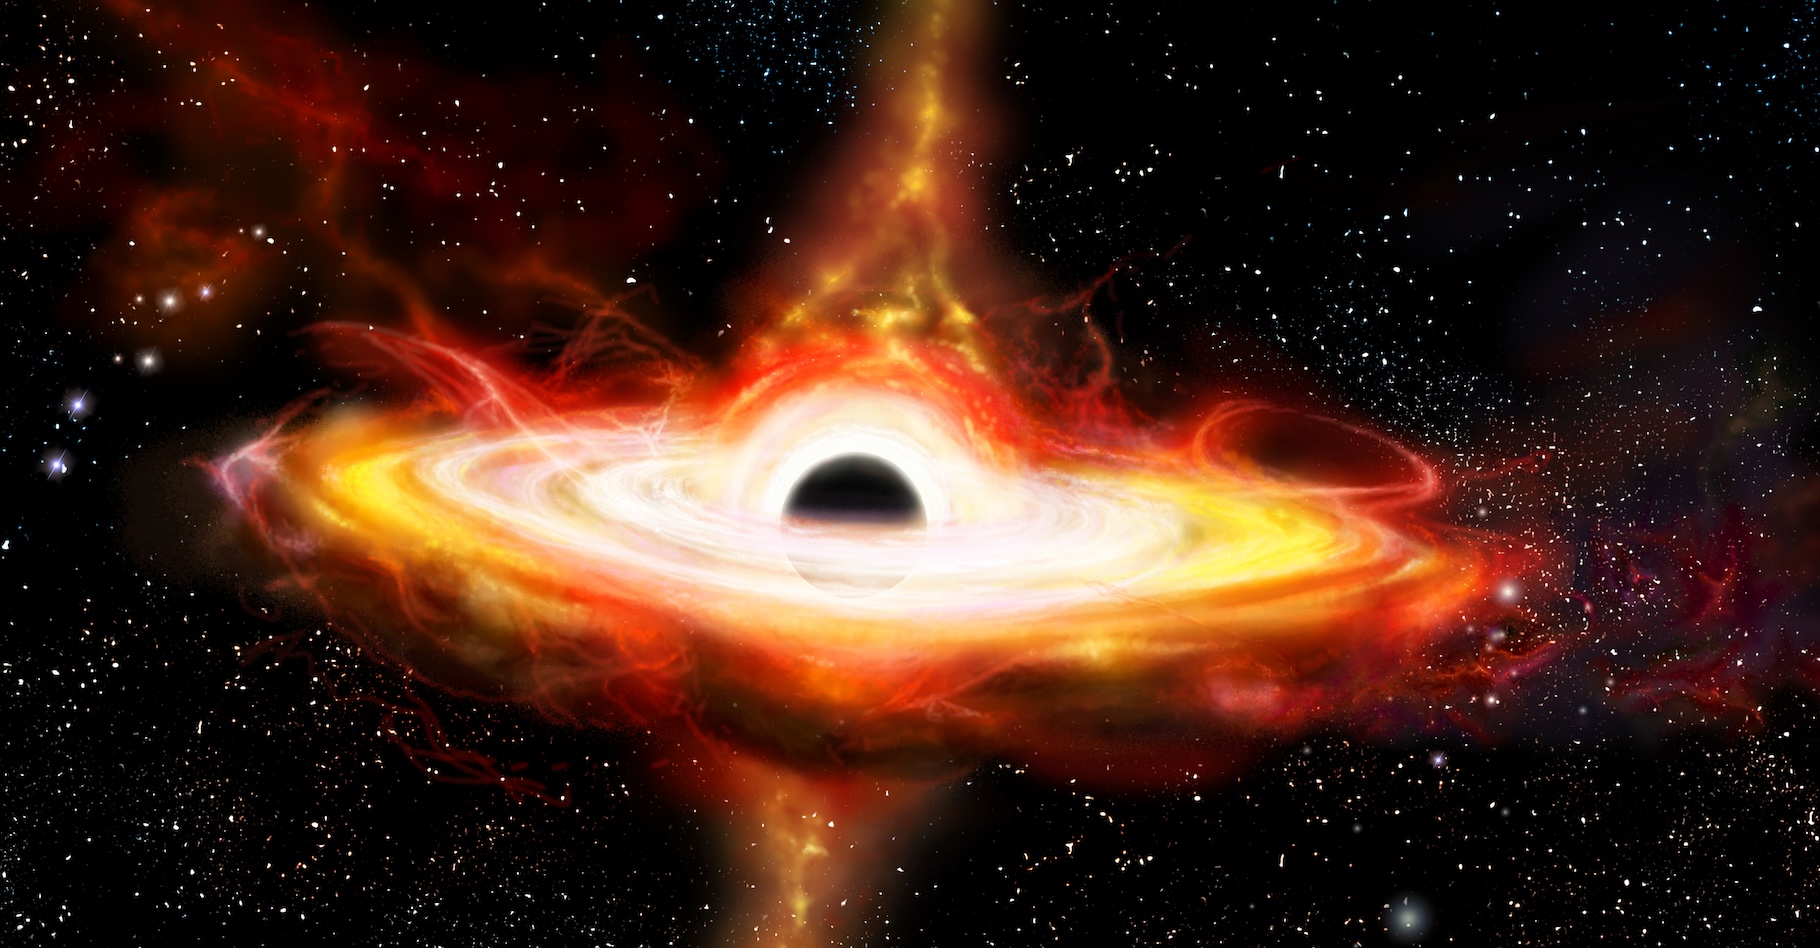 Des chercheurs de l’Institut des sciences et technologies d’Autriche viennent d’identifier des « bébés quasars » qui pourraient les aider à comprendre comme les trous noirs supermassifs grandissent, parfois de manière extrêmement rapide. © dracozlat, Adobe Stock